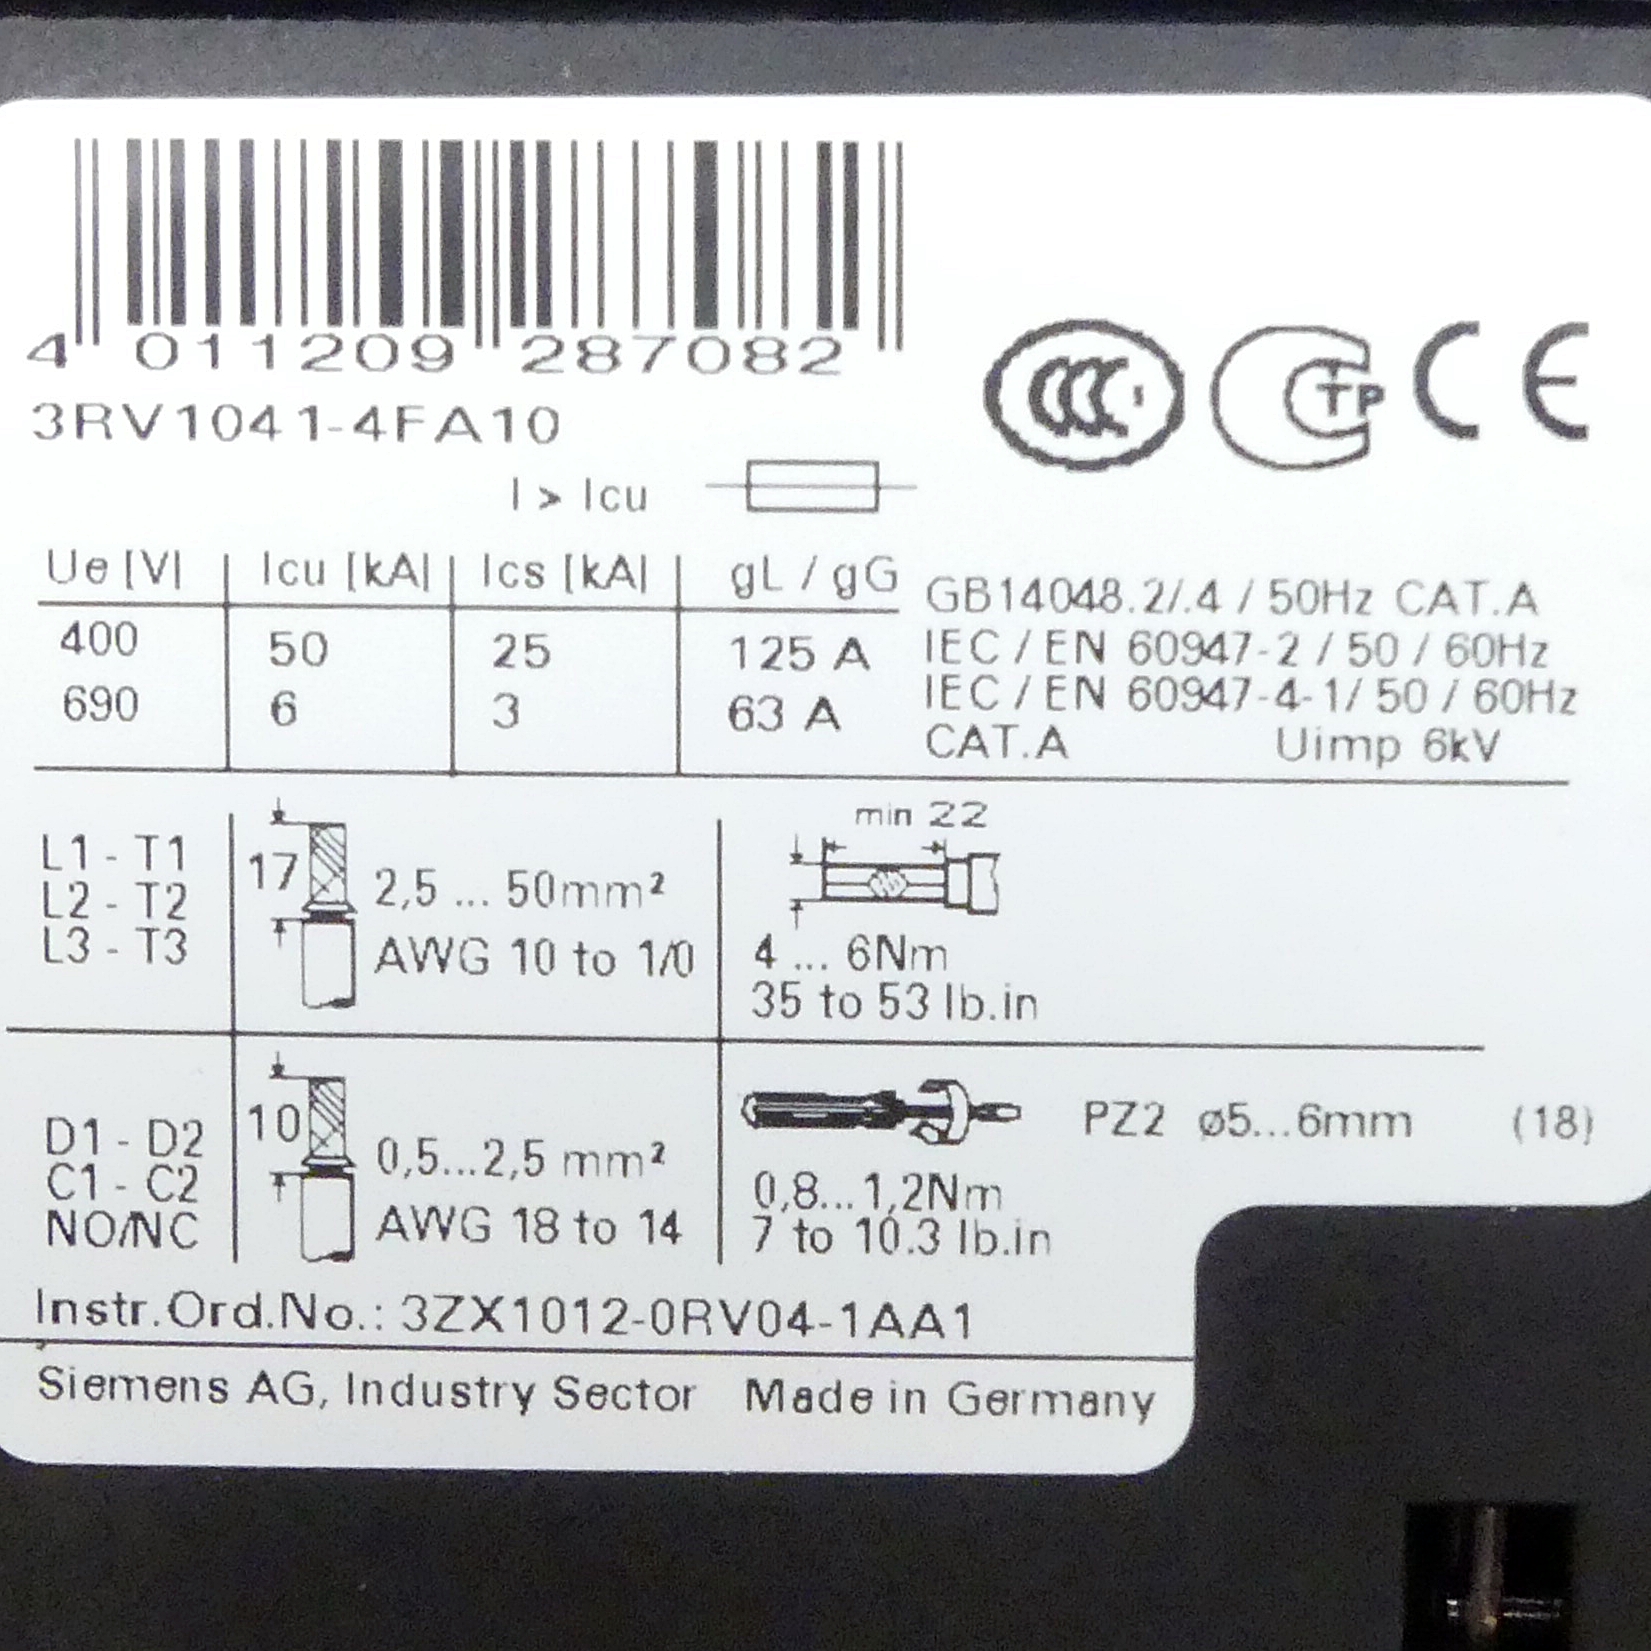 Circuit breaker 3RV1041-4FA10 